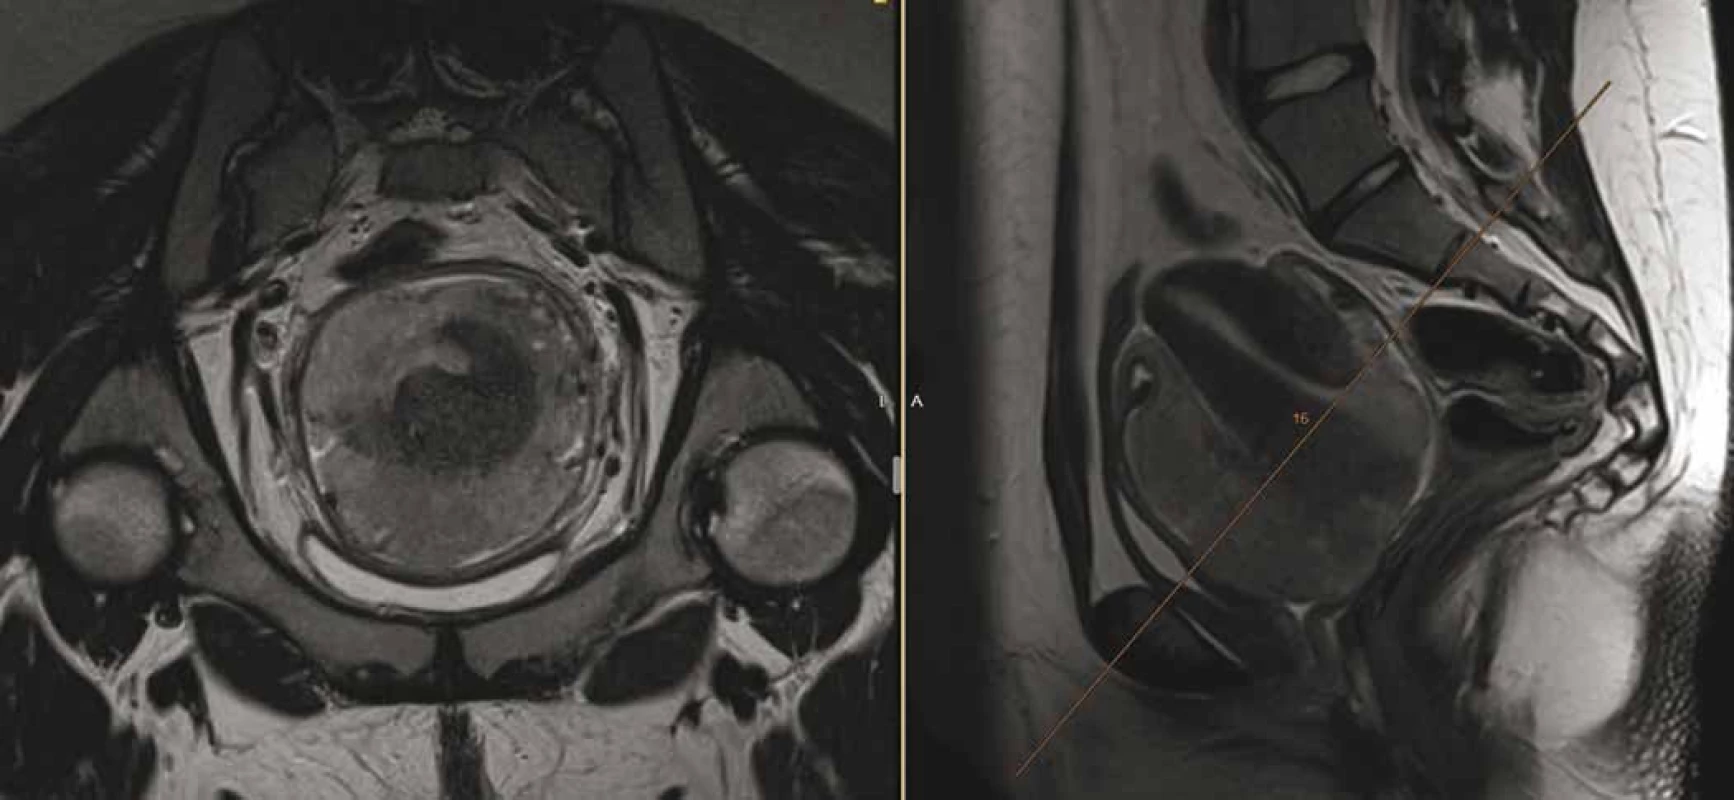 Magnetická rezonance pánve odhalující tumor velikosti 80 × 90 × 80 mm, vycházející z oblasti děložního hrdla, de facto
obdávající dělohu, vyplňující pochvu, naléhající na močový měchýř a rektum (bez zřetelné invaze), lymfadenopatie presakrálně
(30 × 15 × 15 mm) a bilaterálně parailicky (28 × 21 × 40 mm).